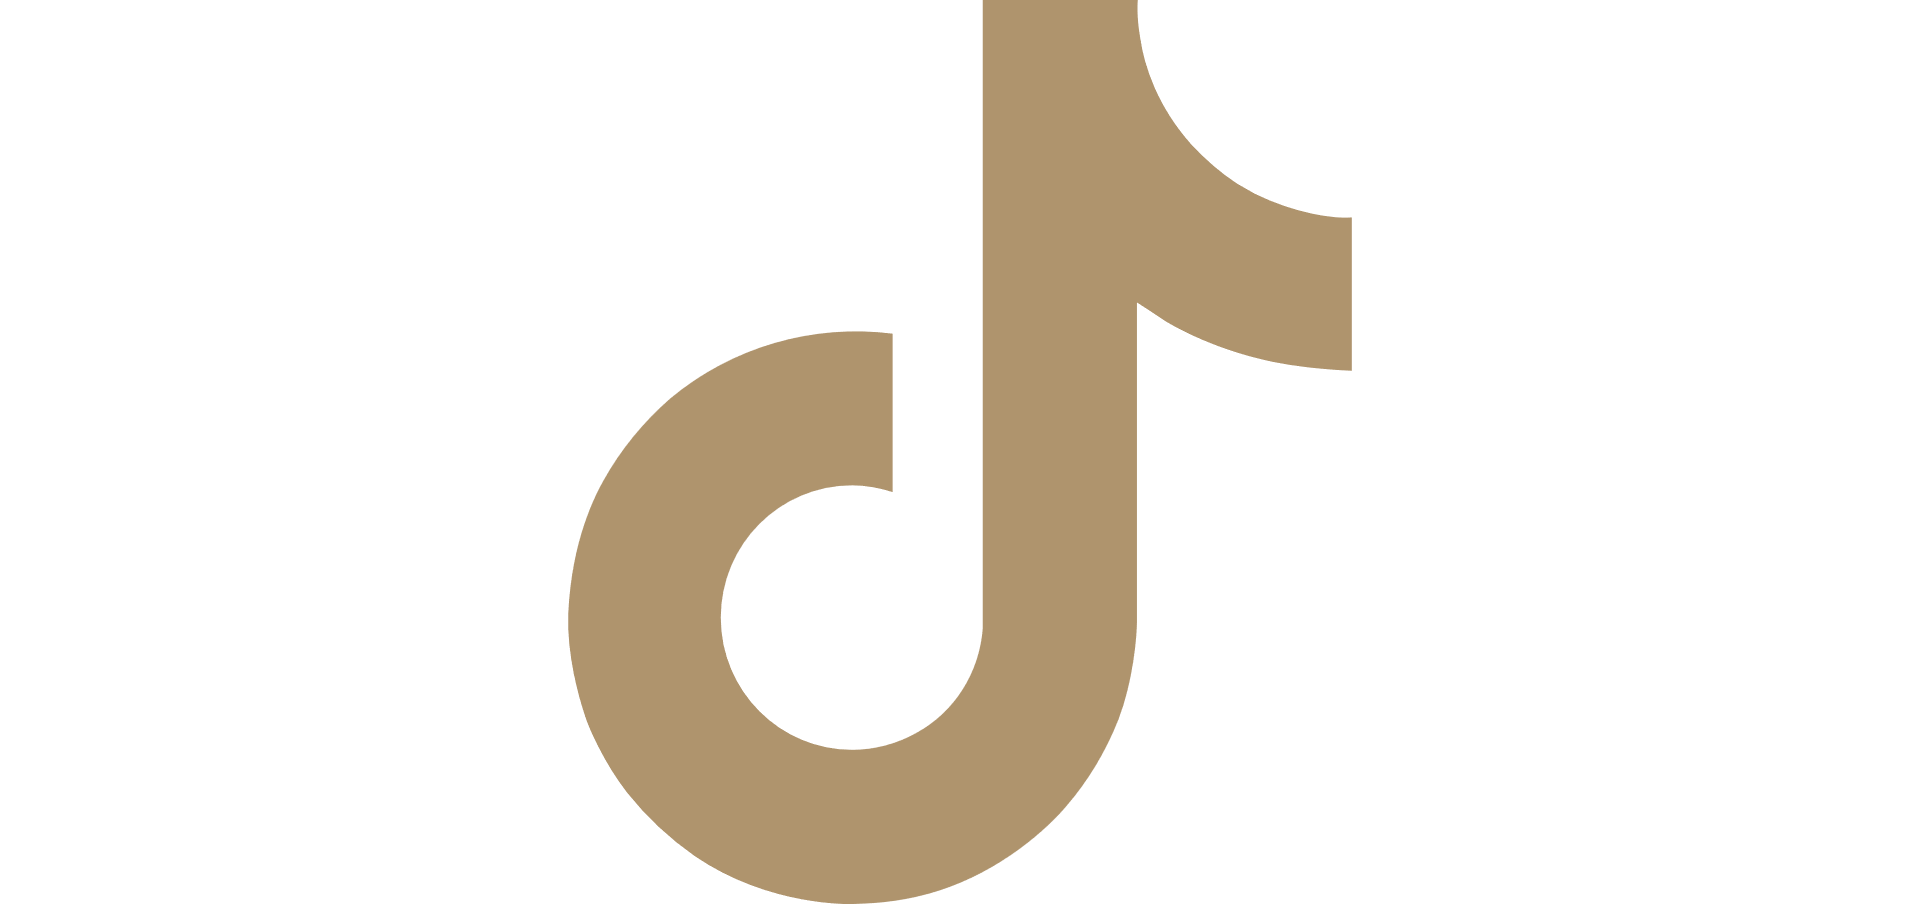 logo-tiktok-dore.png